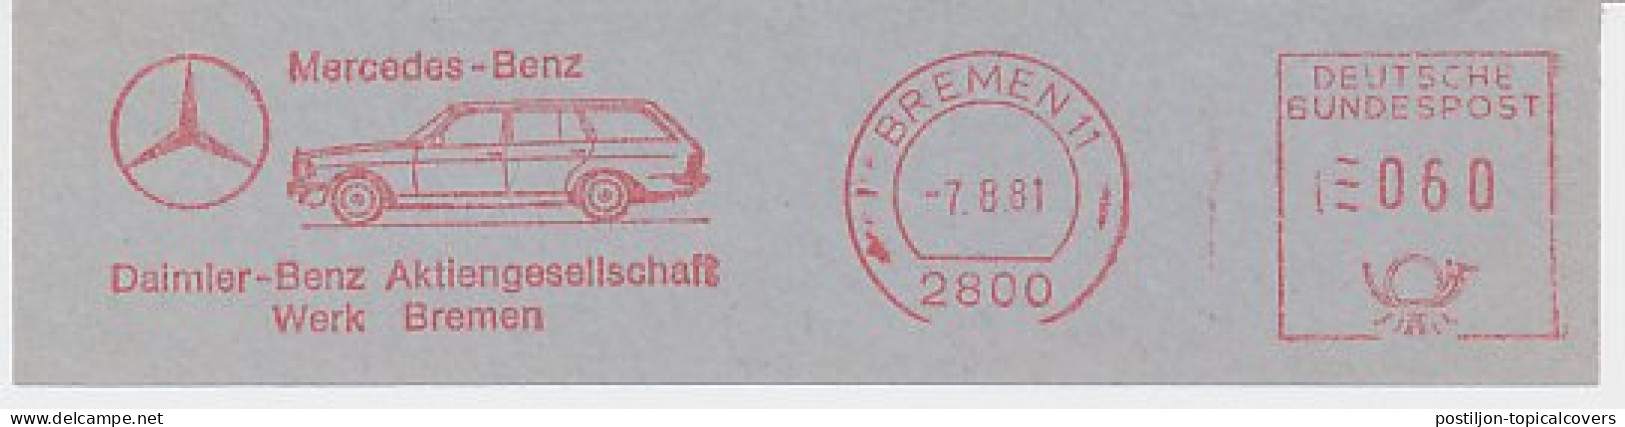 Meter Cut Germany 1981 Car - Mercedes Benz - Auto's